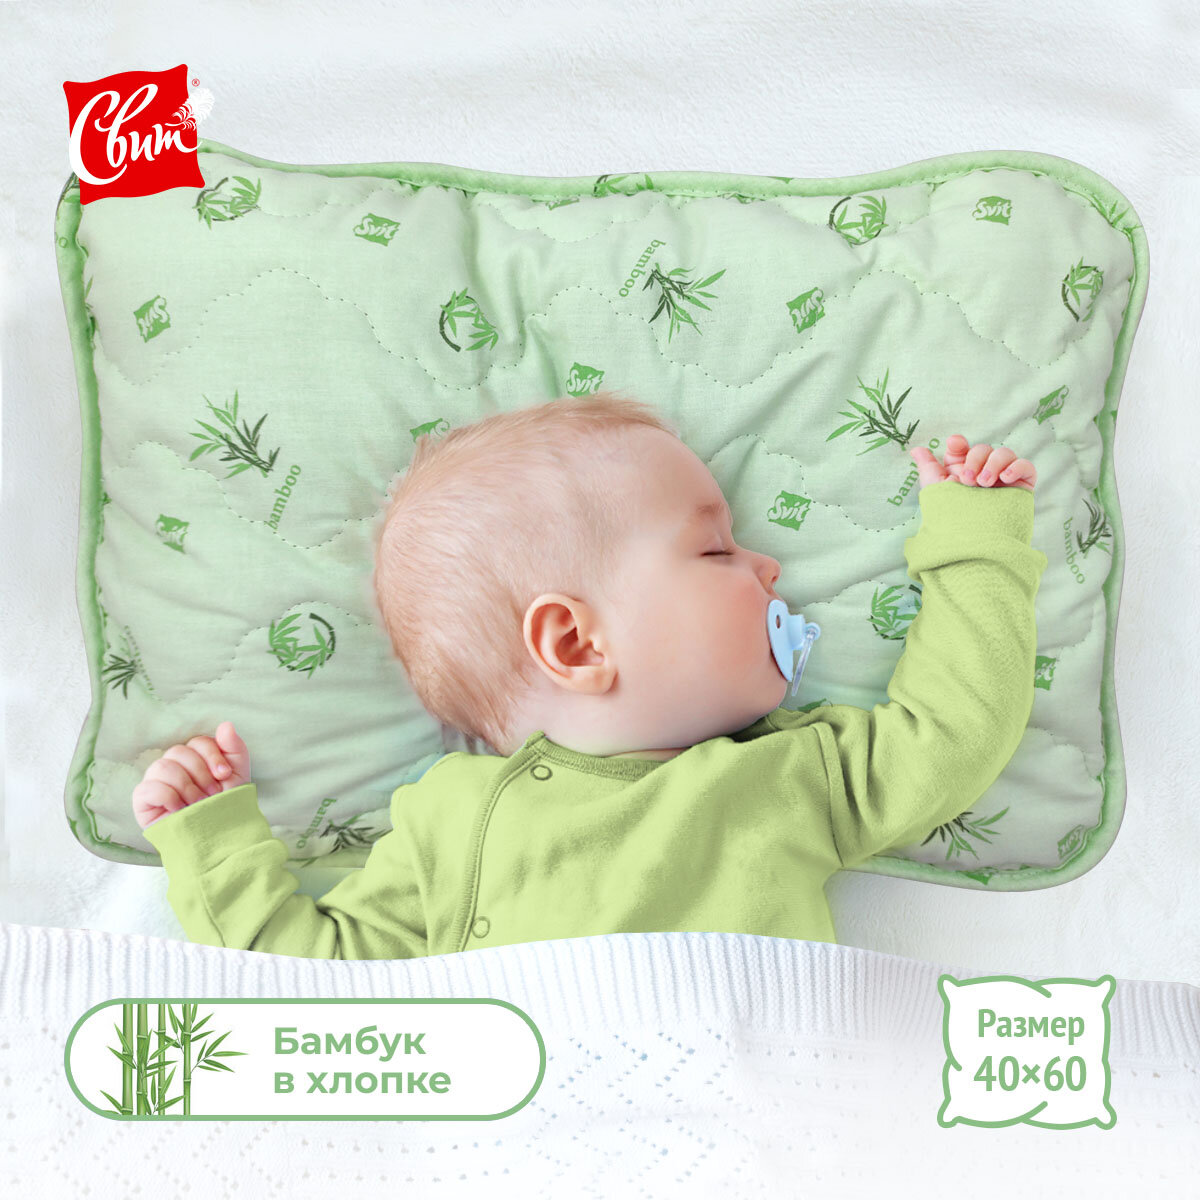 Подушка детская для сна 40x60 см Бамбук Премиум, гипоаллергенная